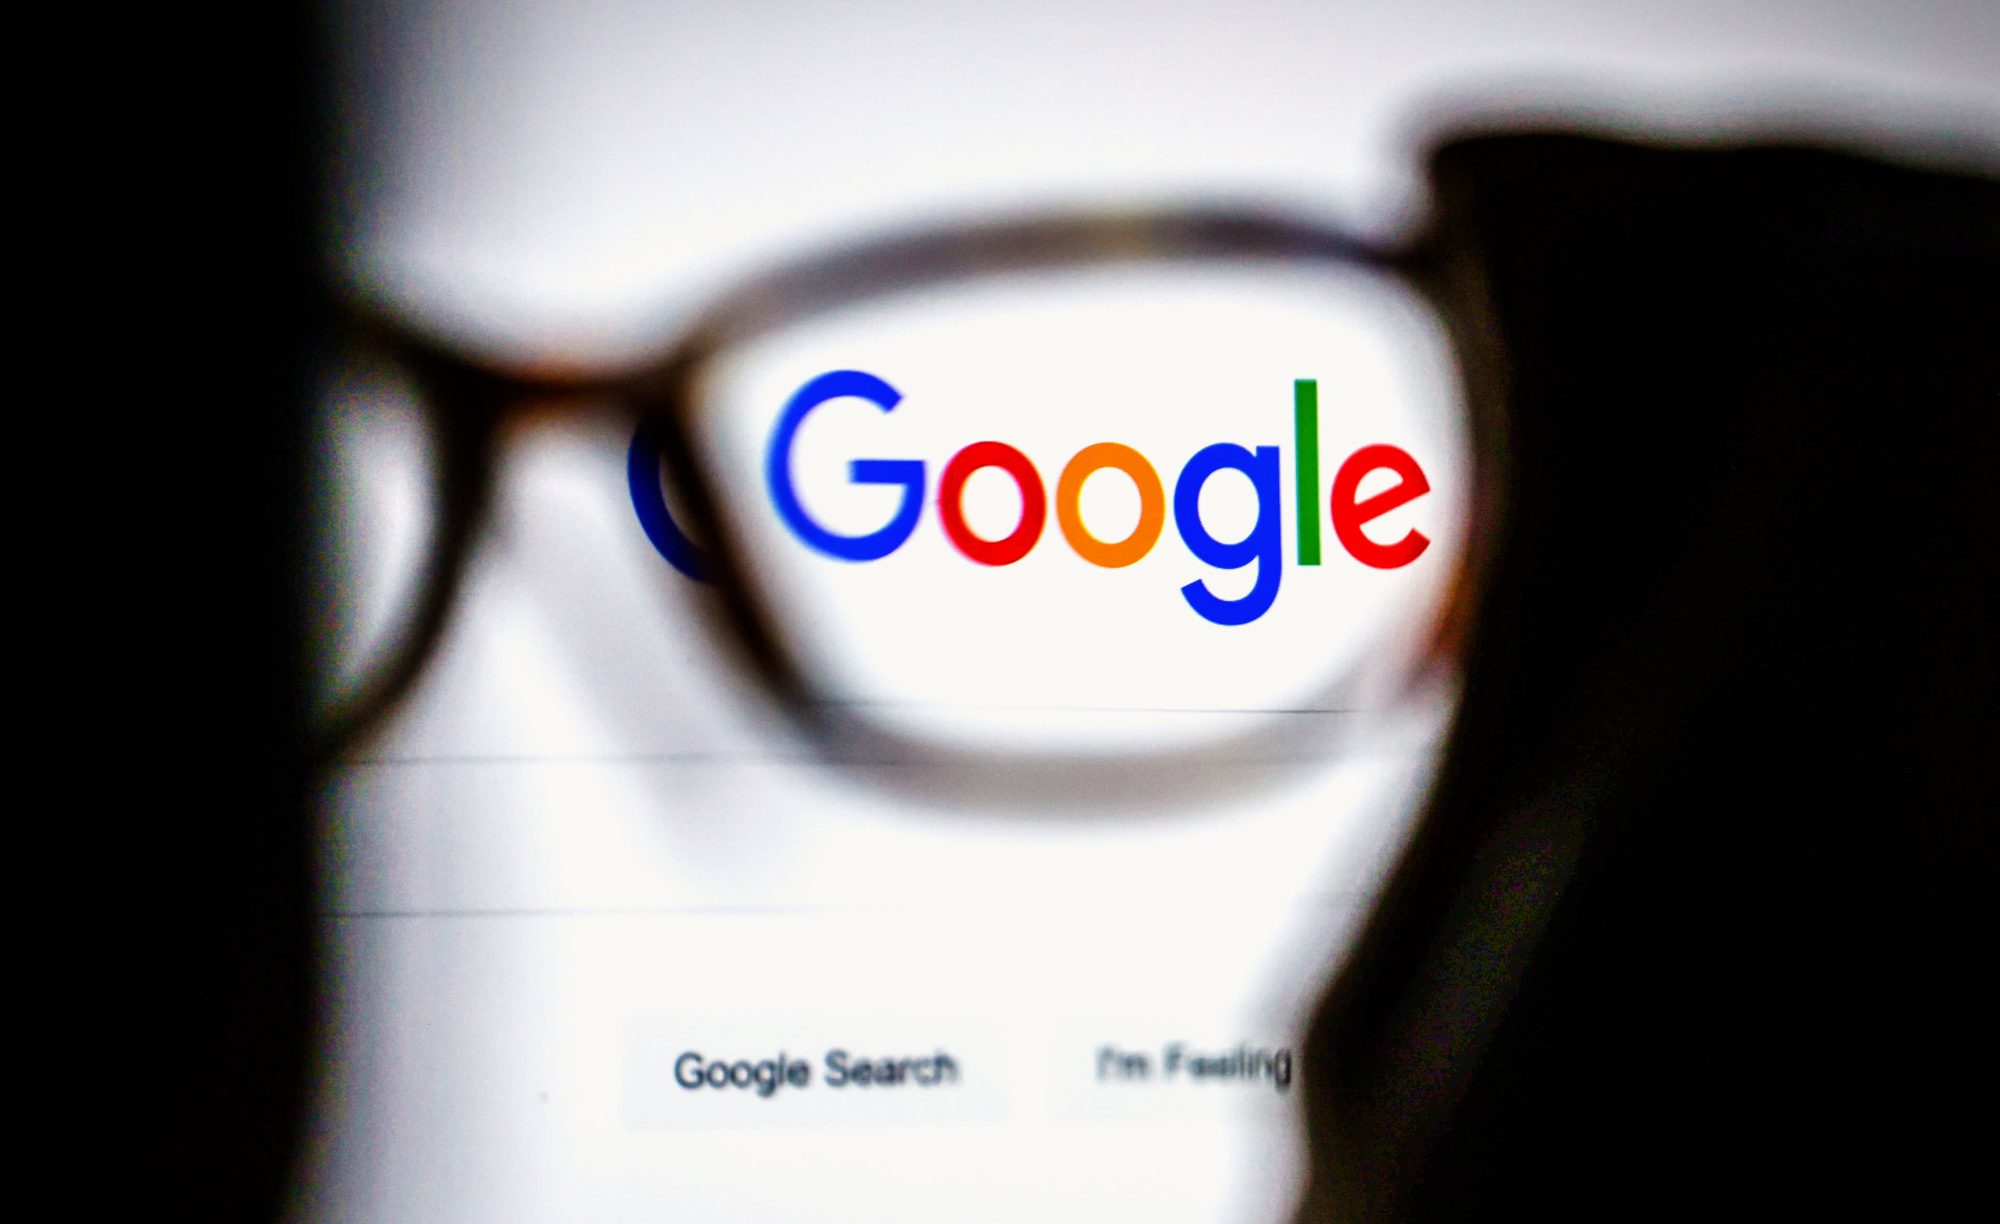 غوغل يقوم بتحديث تقرير فهرسة الفيديو في Search Console trkeez.com